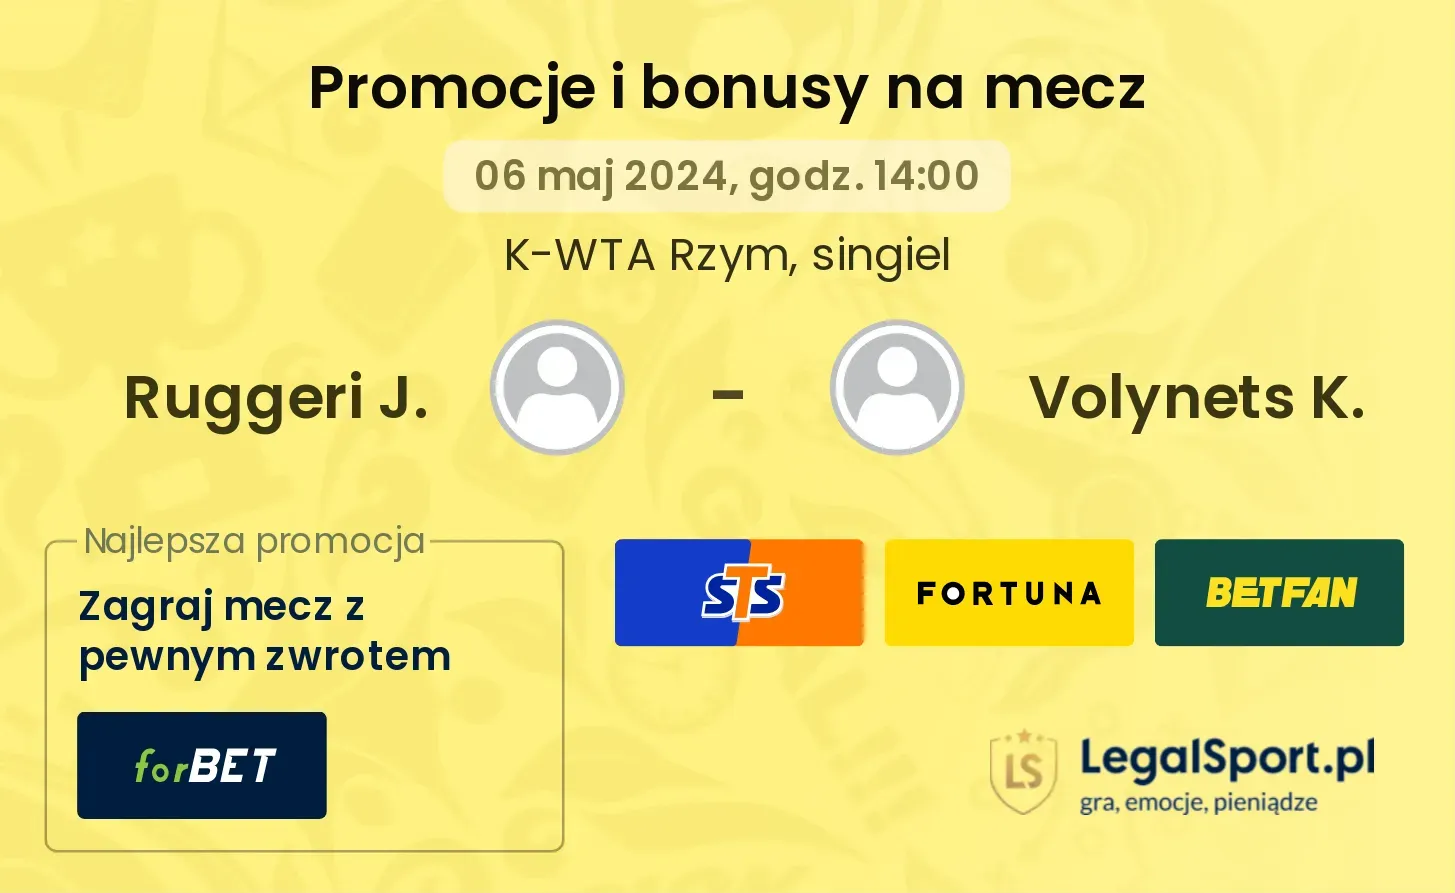 Ruggeri J. - Volynets K. promocje bonusy na mecz